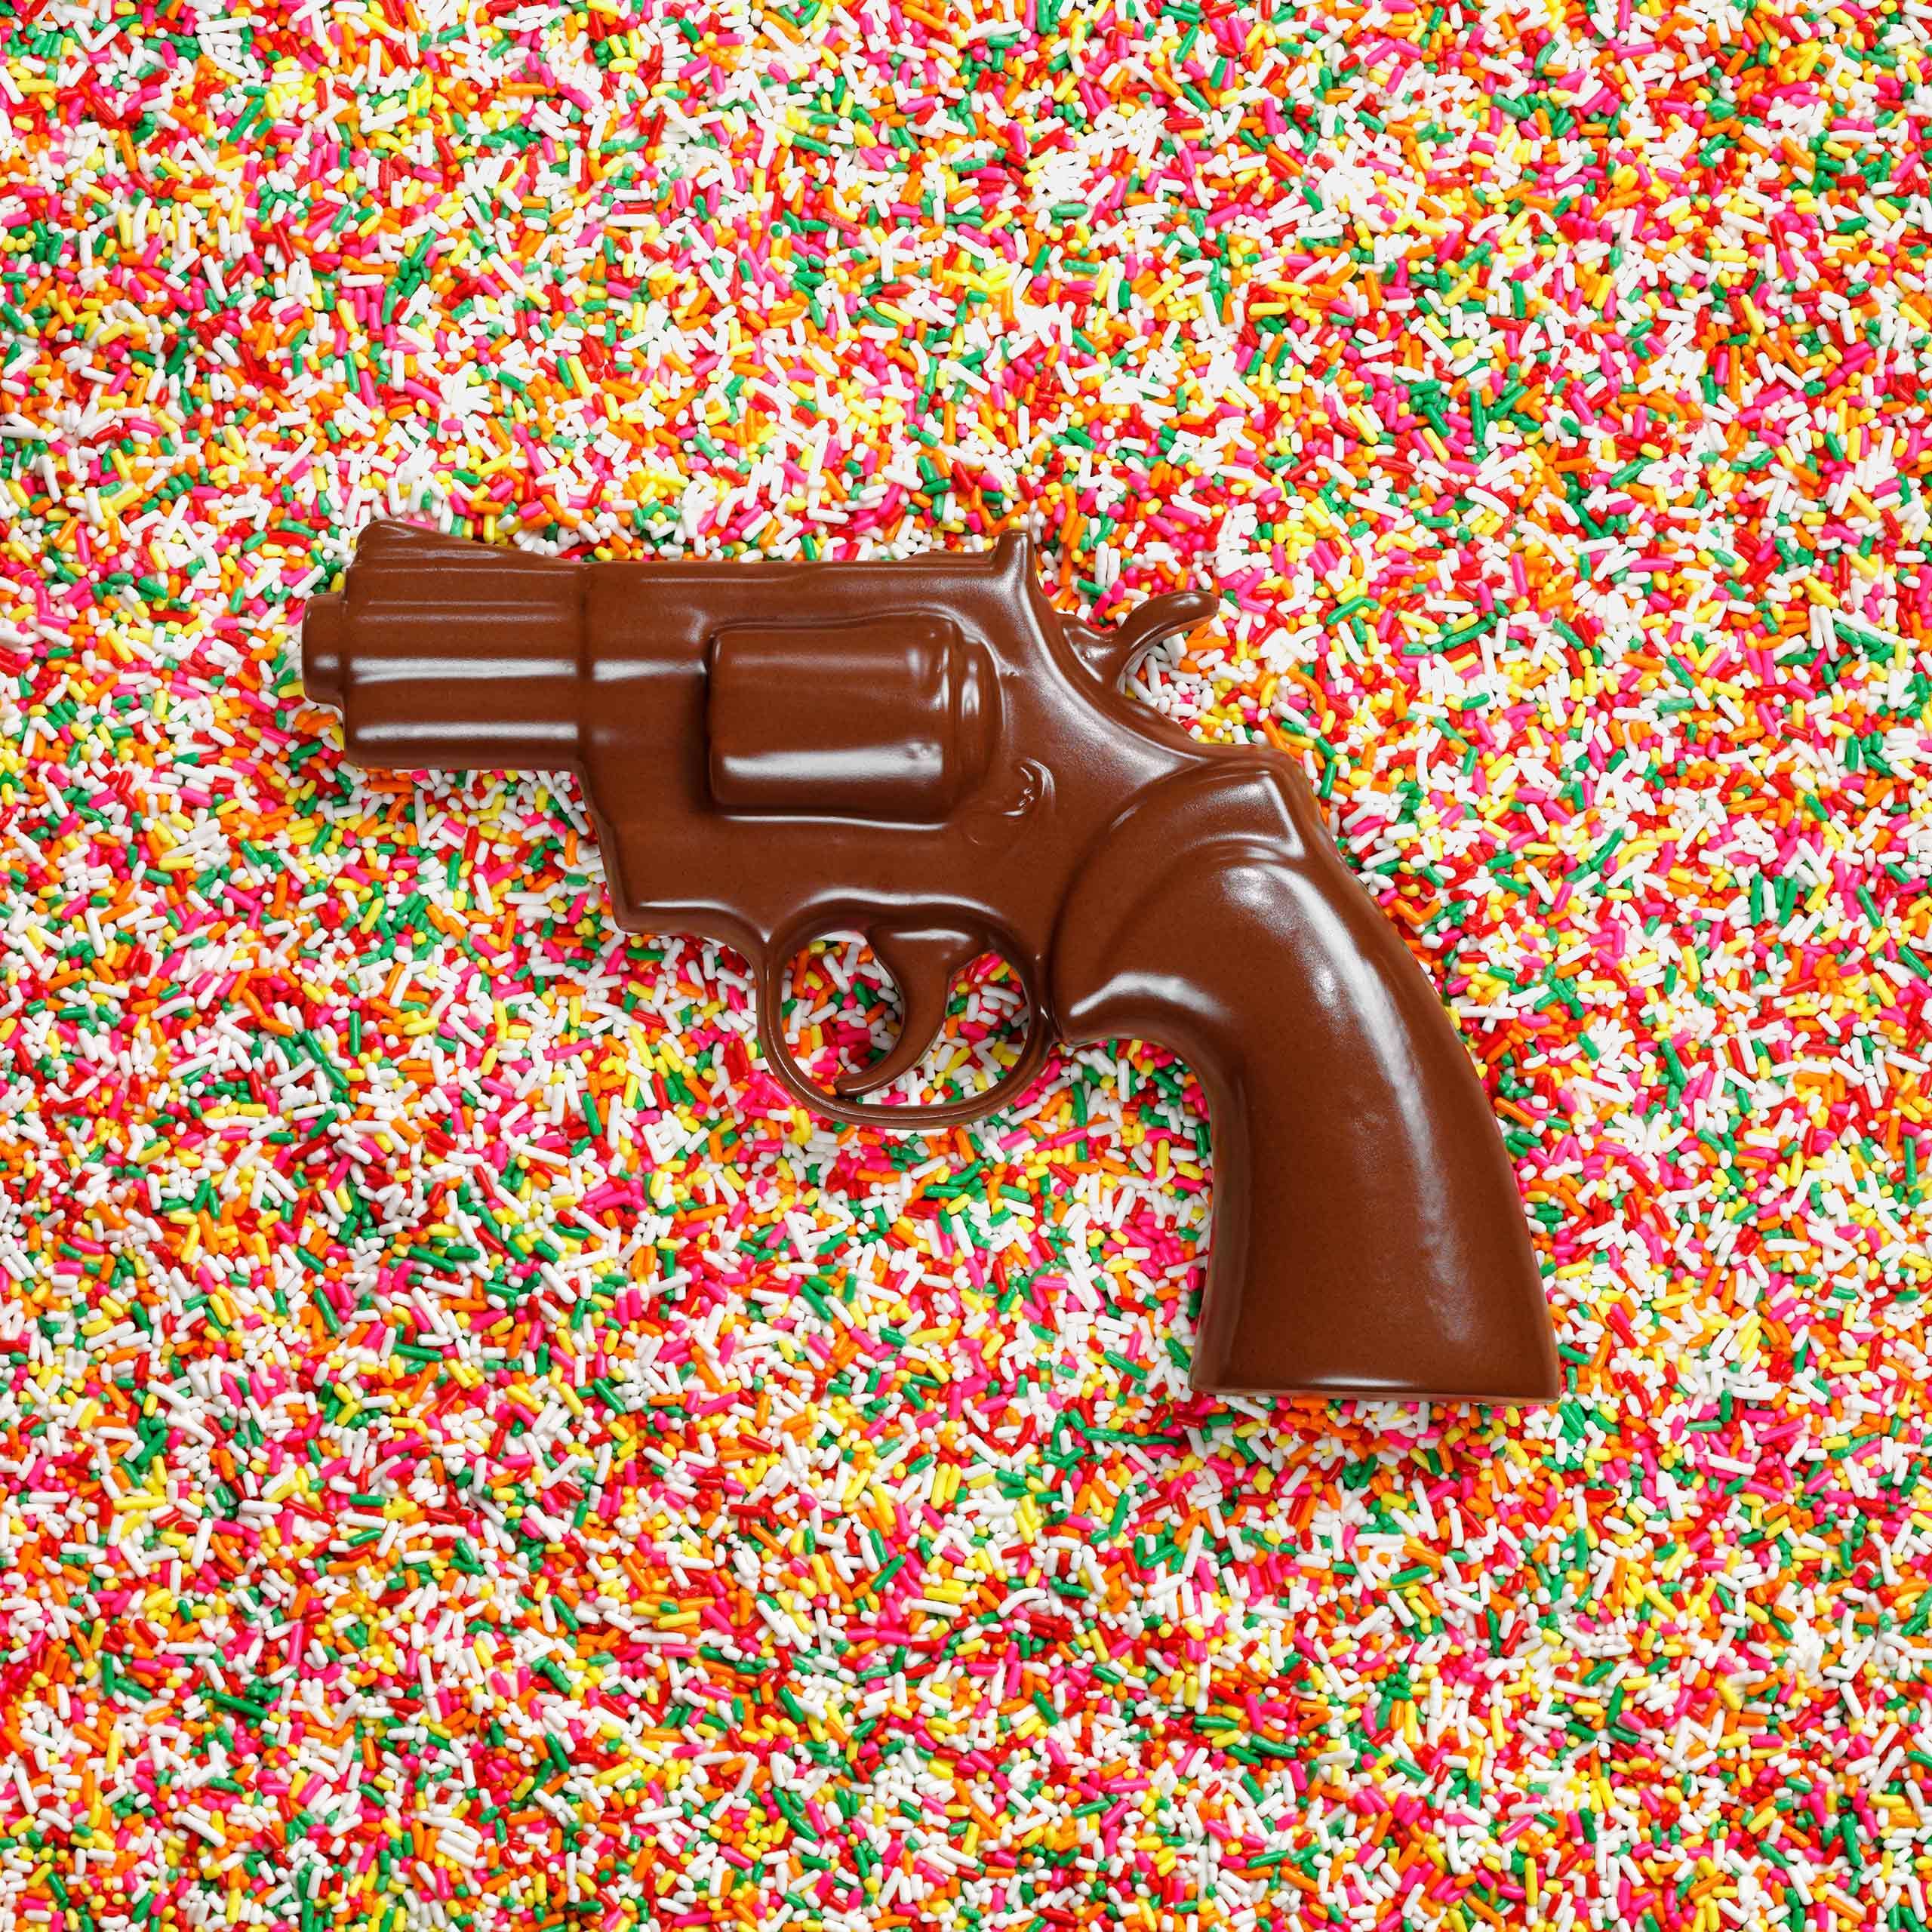 chocolate gun